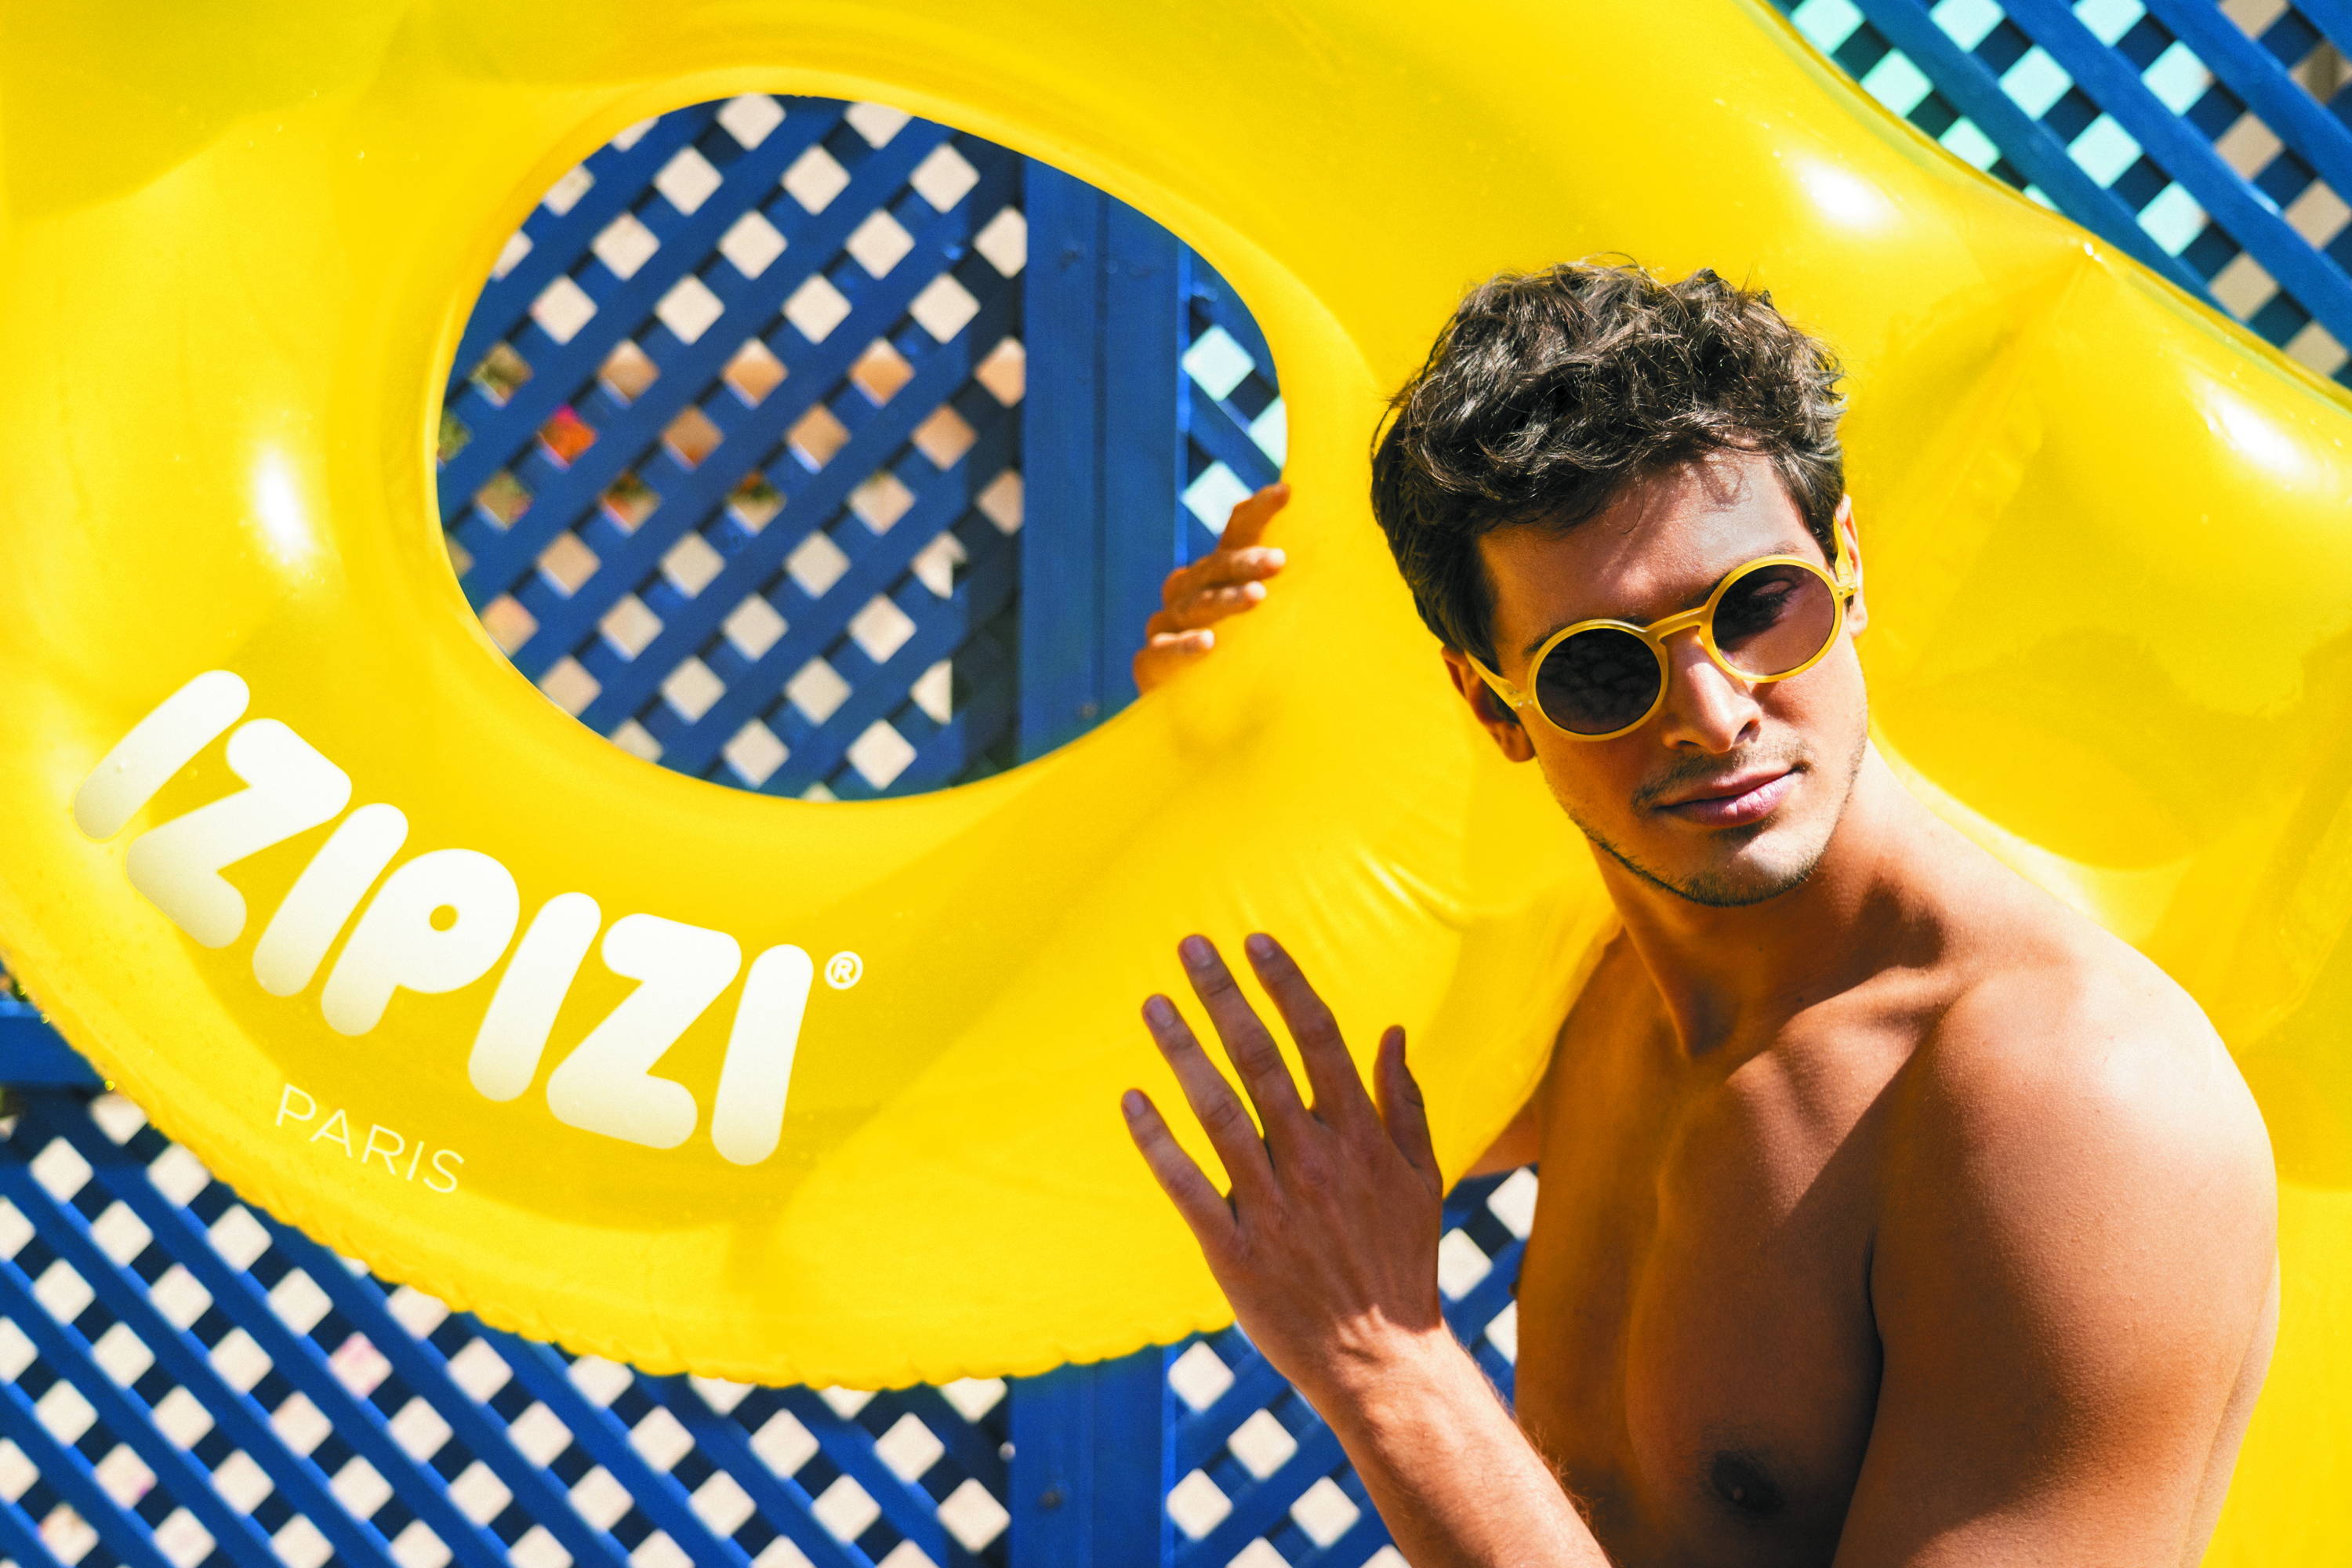 IZIPIZI x Sunnylife Collaboration Sunglasses Pool Floats